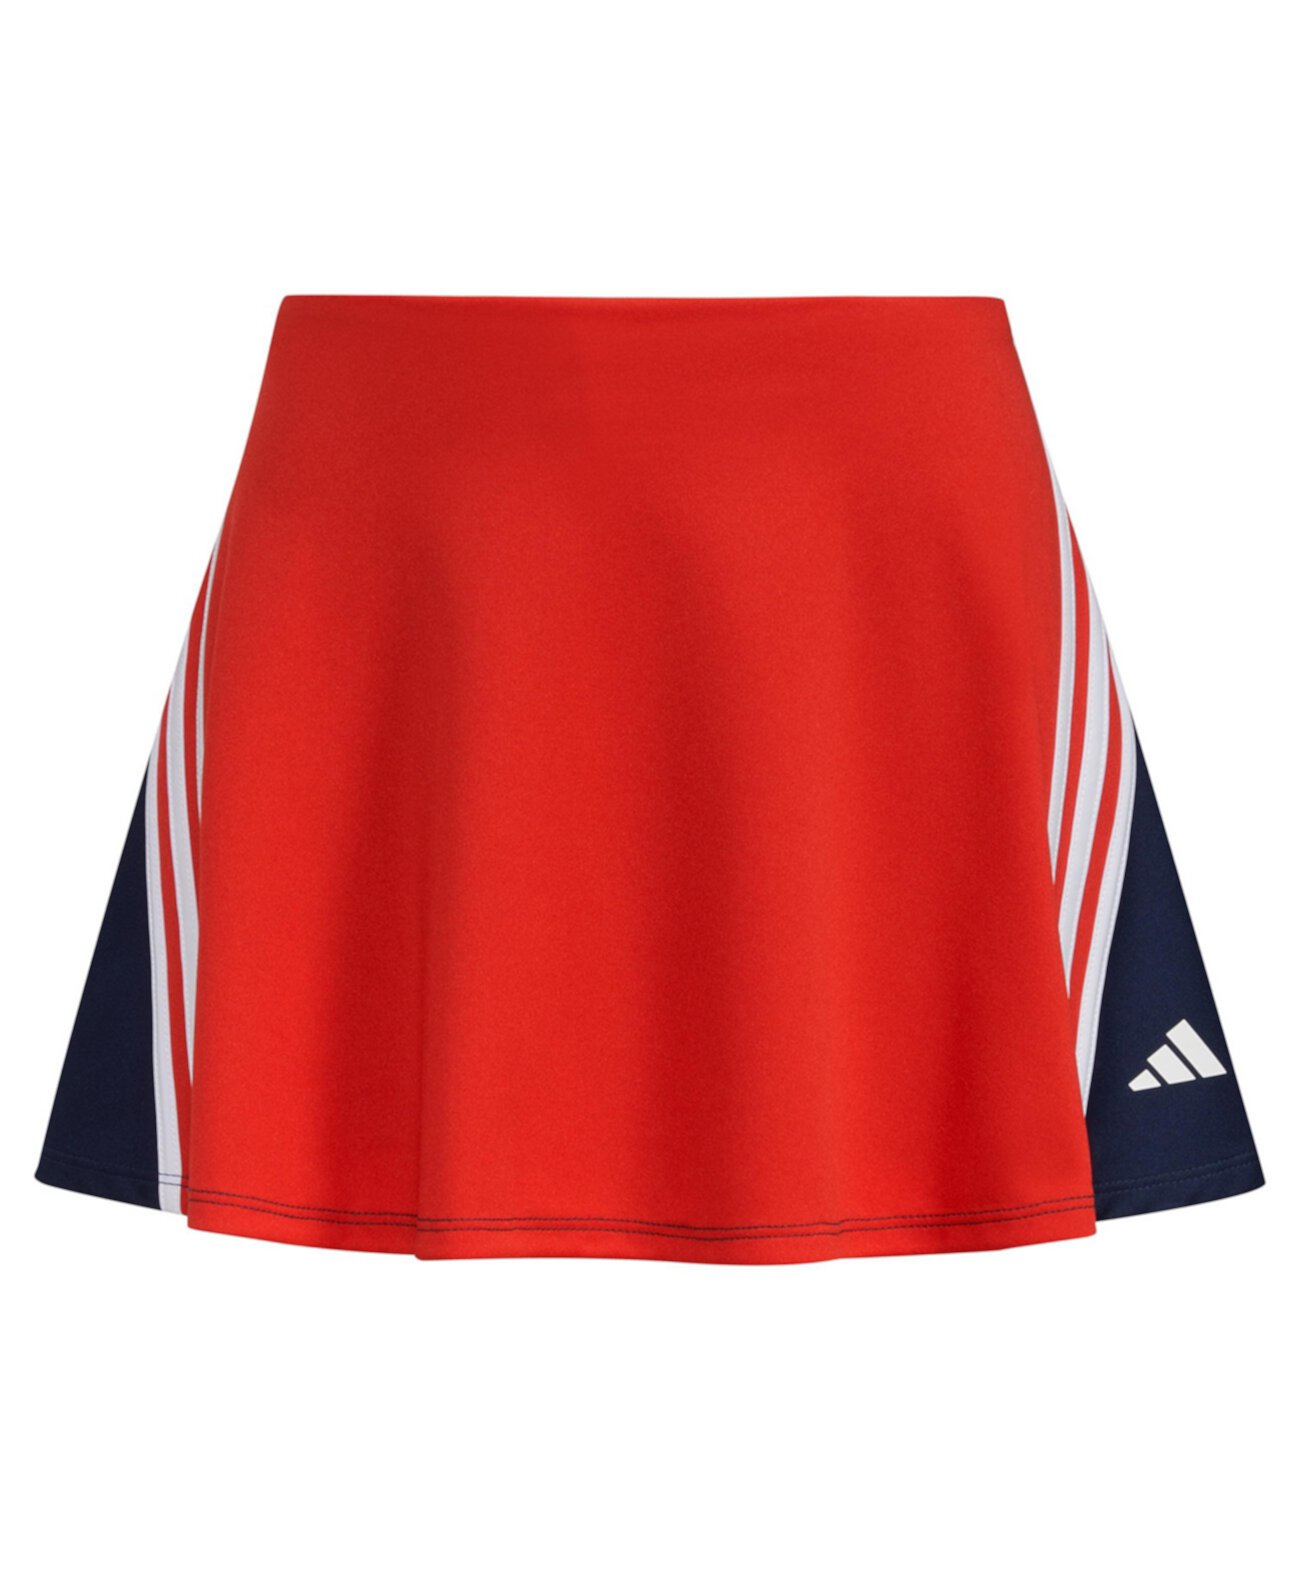 Спортивные шорты с 3 полосками на эластичном поясе для больших девочек Adidas